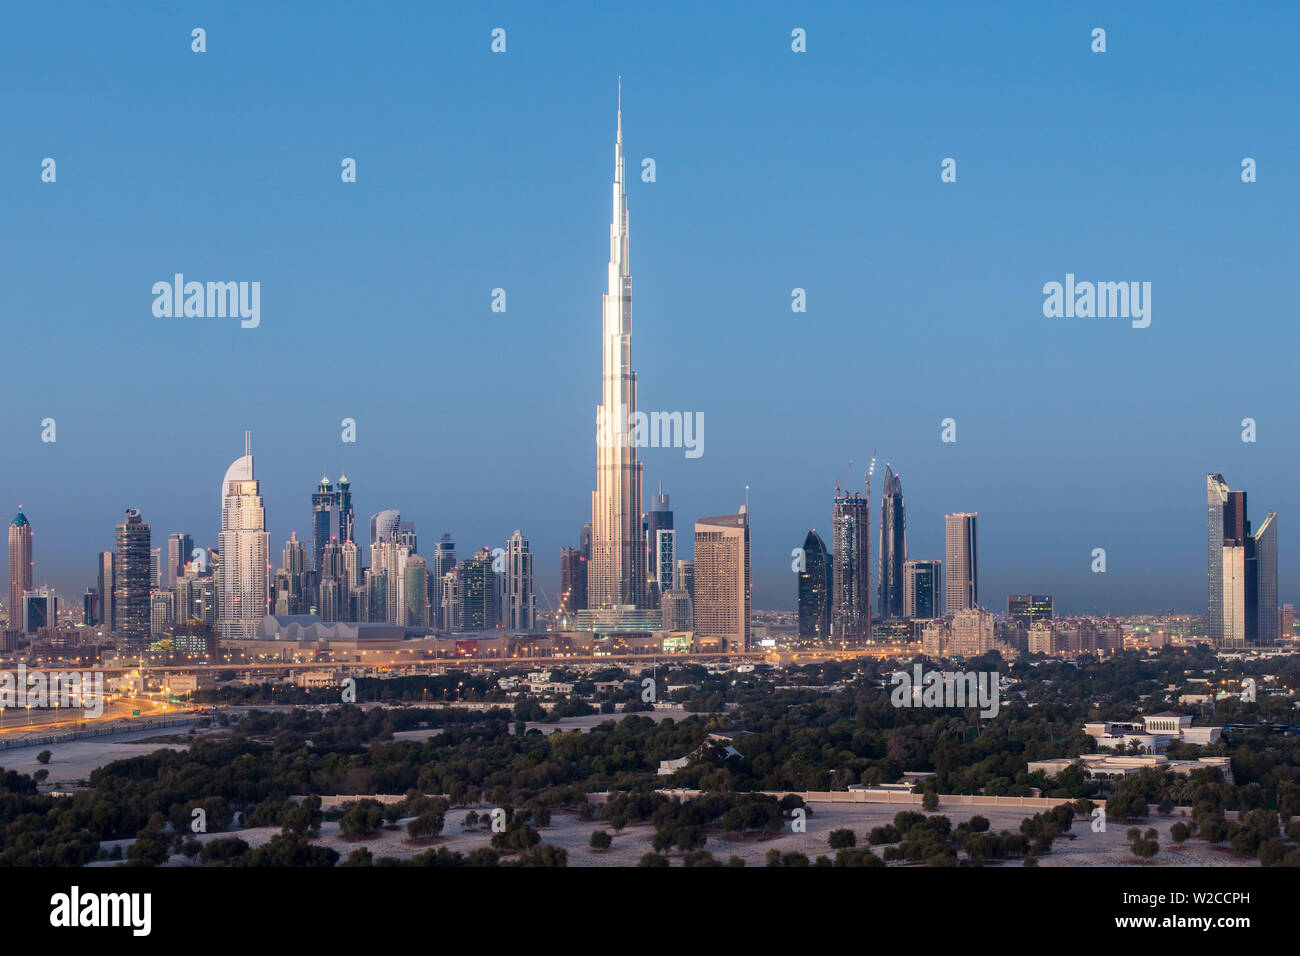 Vereinigte Arabische Emirate, Dubai, erhöhten Blick auf die neue Skyline von Dubai, Burj Khalifa, moderne Architektur und skyscrappers an der Sheikh Zayed Road Stockfoto